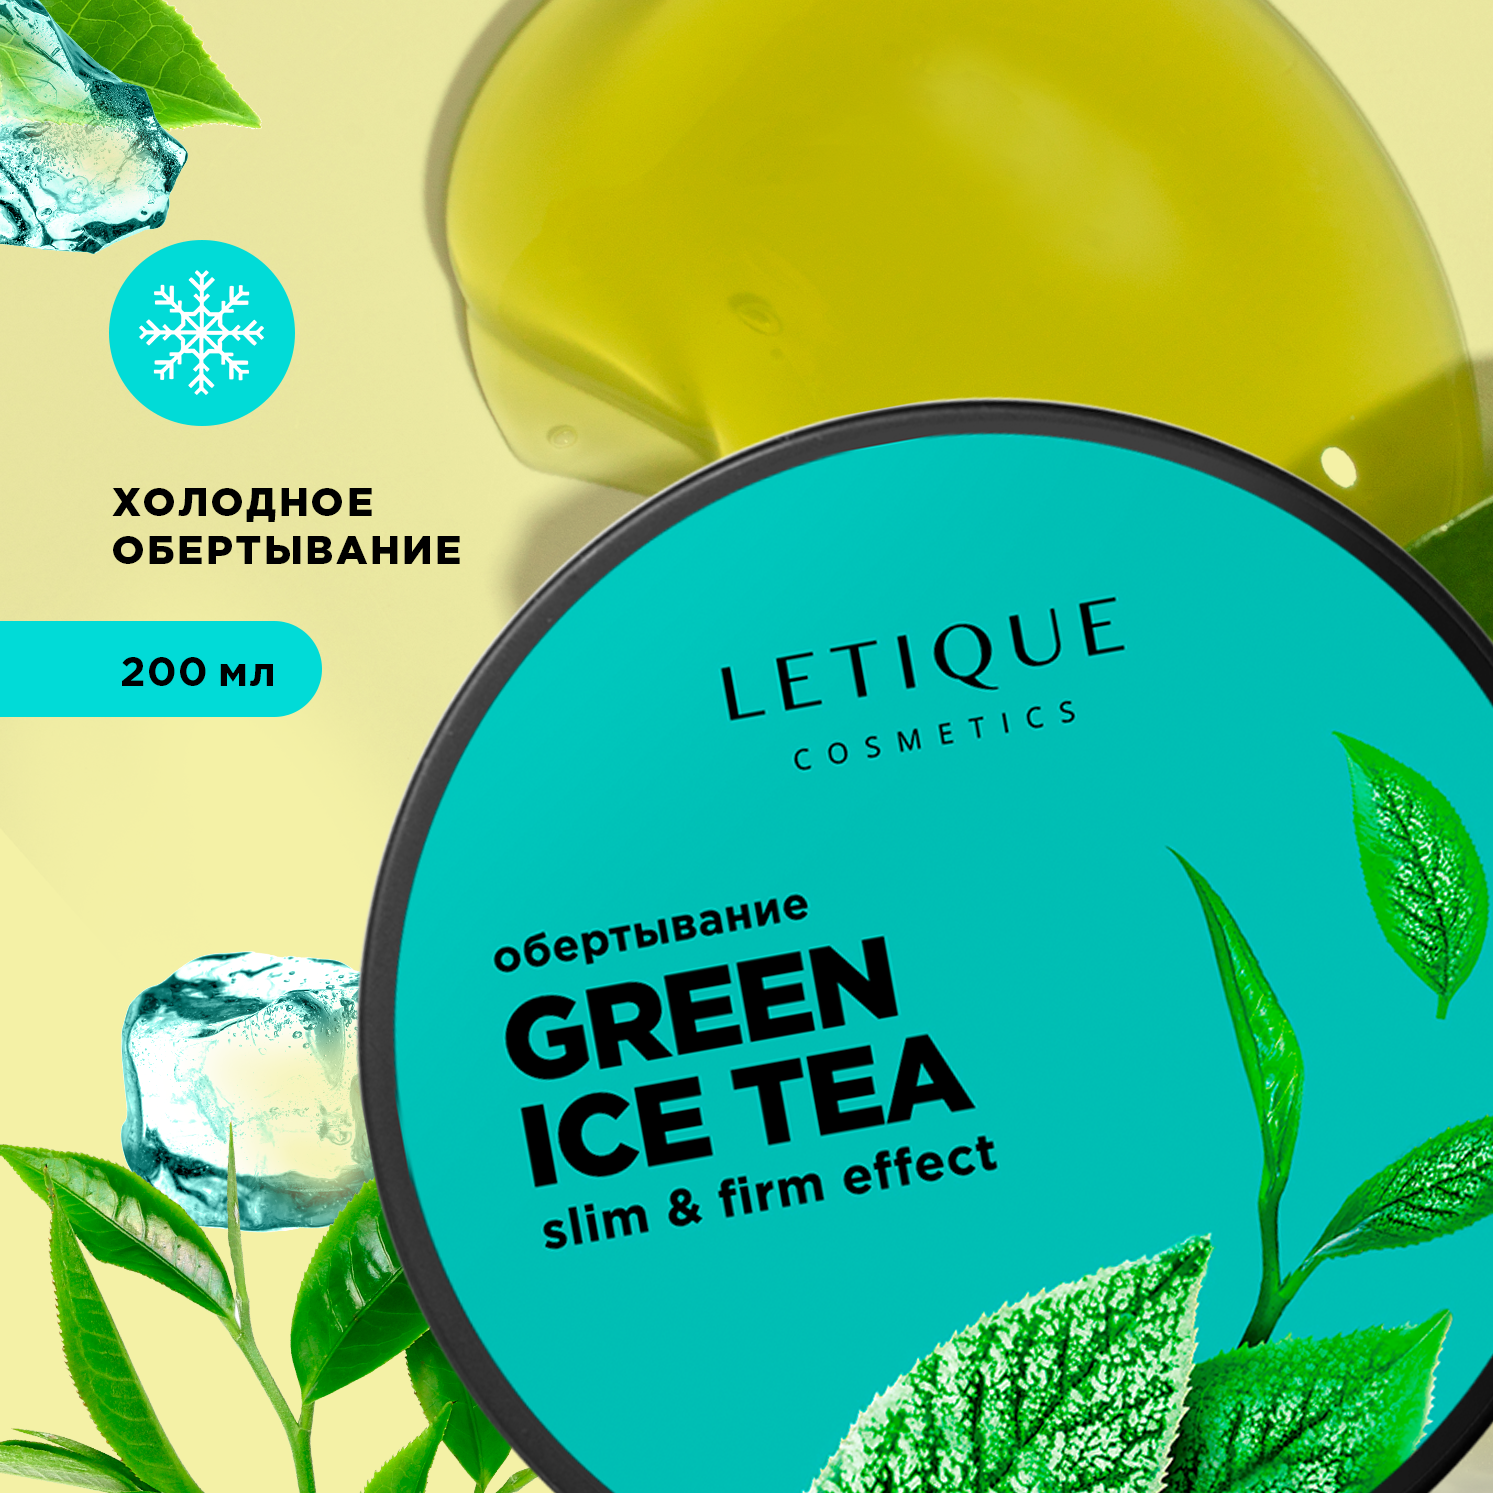 Обертывание холодное для тела Letique Cosmetics Green Ice Tea elfora антицеллюлитное обертывание для тела холодное шоколадное 500